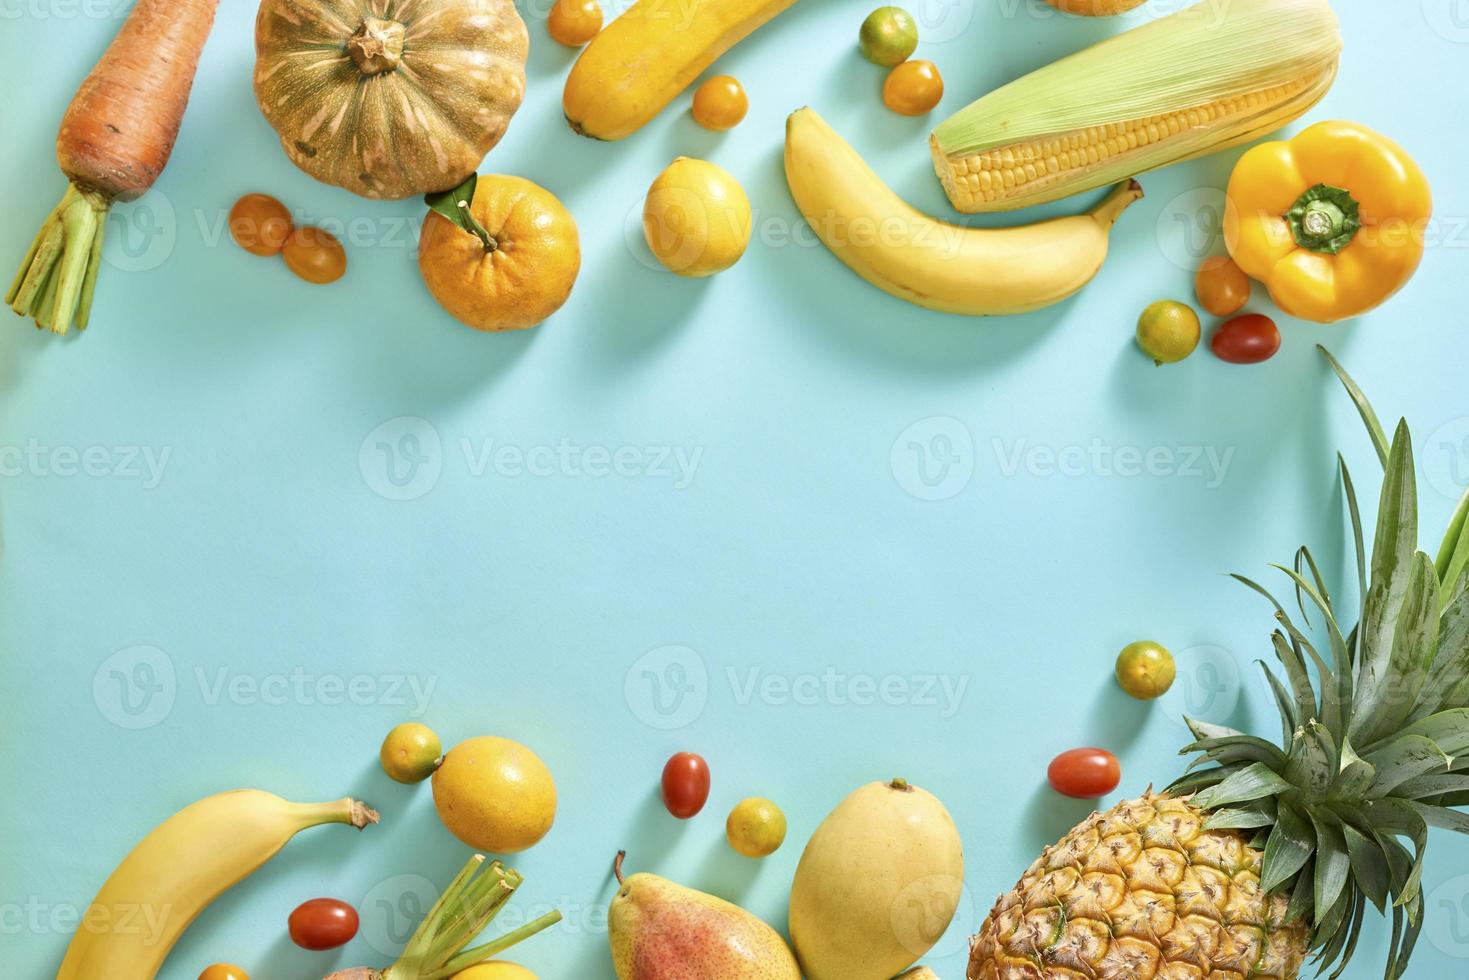 coleção de frutas e legumes amarelos frescos sobre fundo azul claro foto